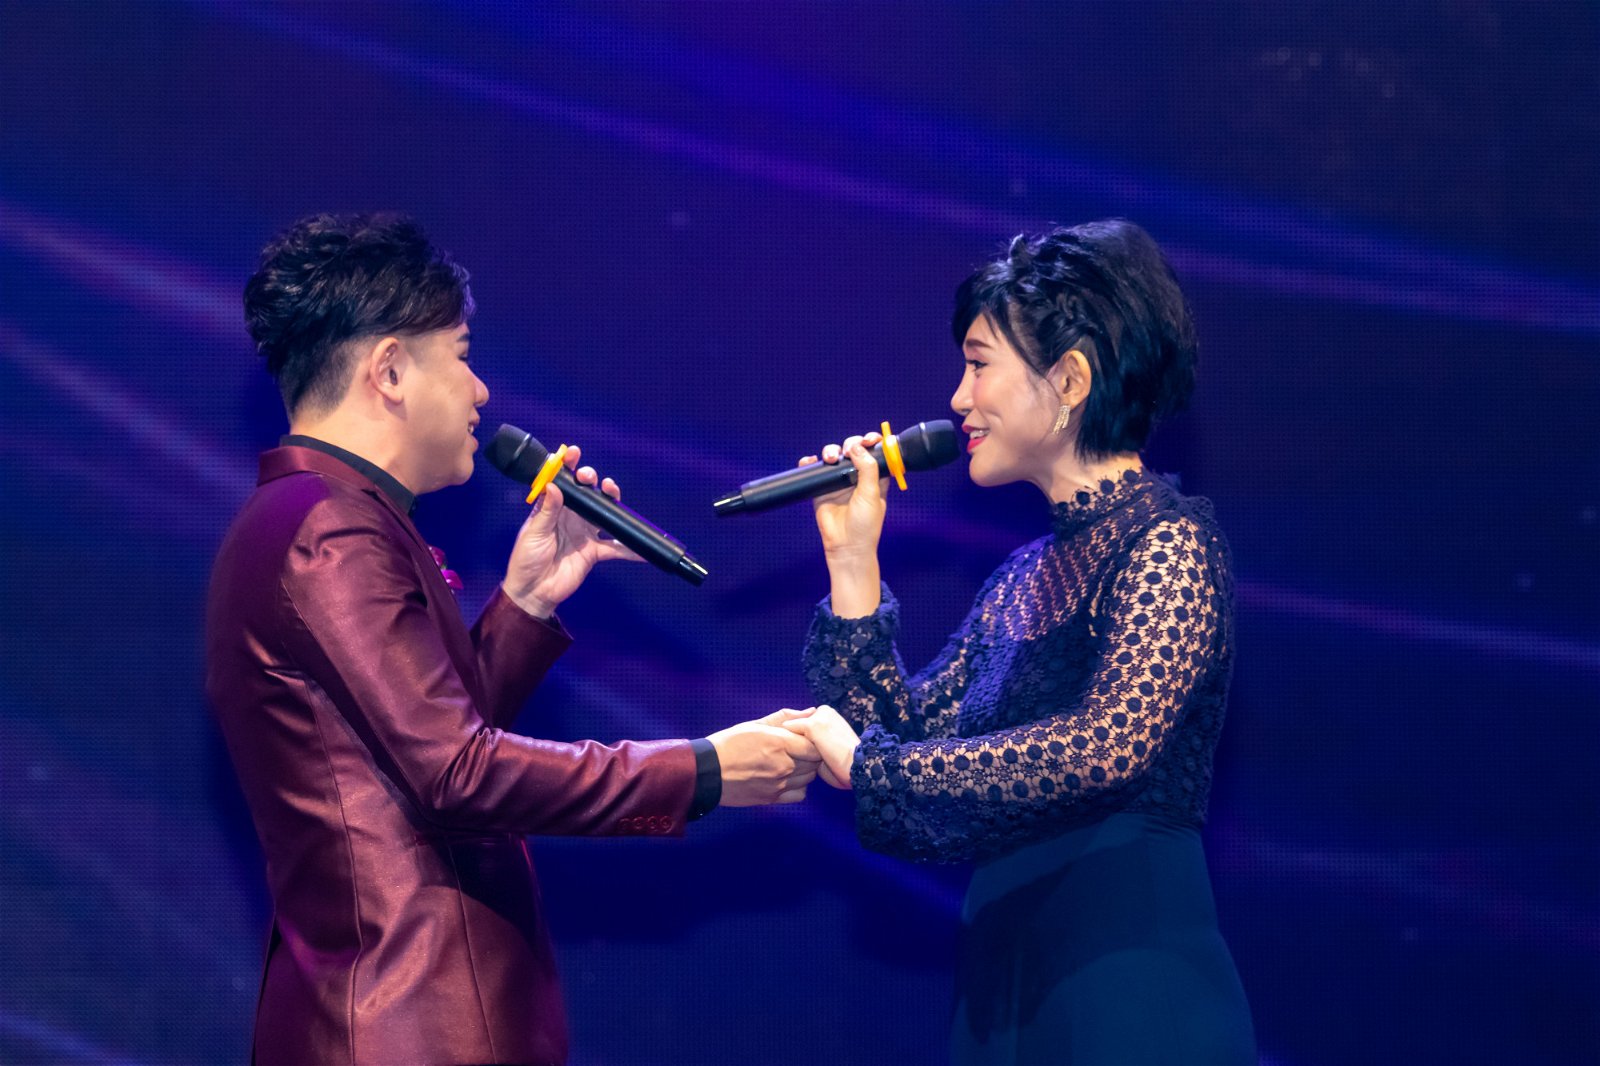 刘俊毅和慈善大使戴丽津深情合唱演唱会主题曲《不异样》。